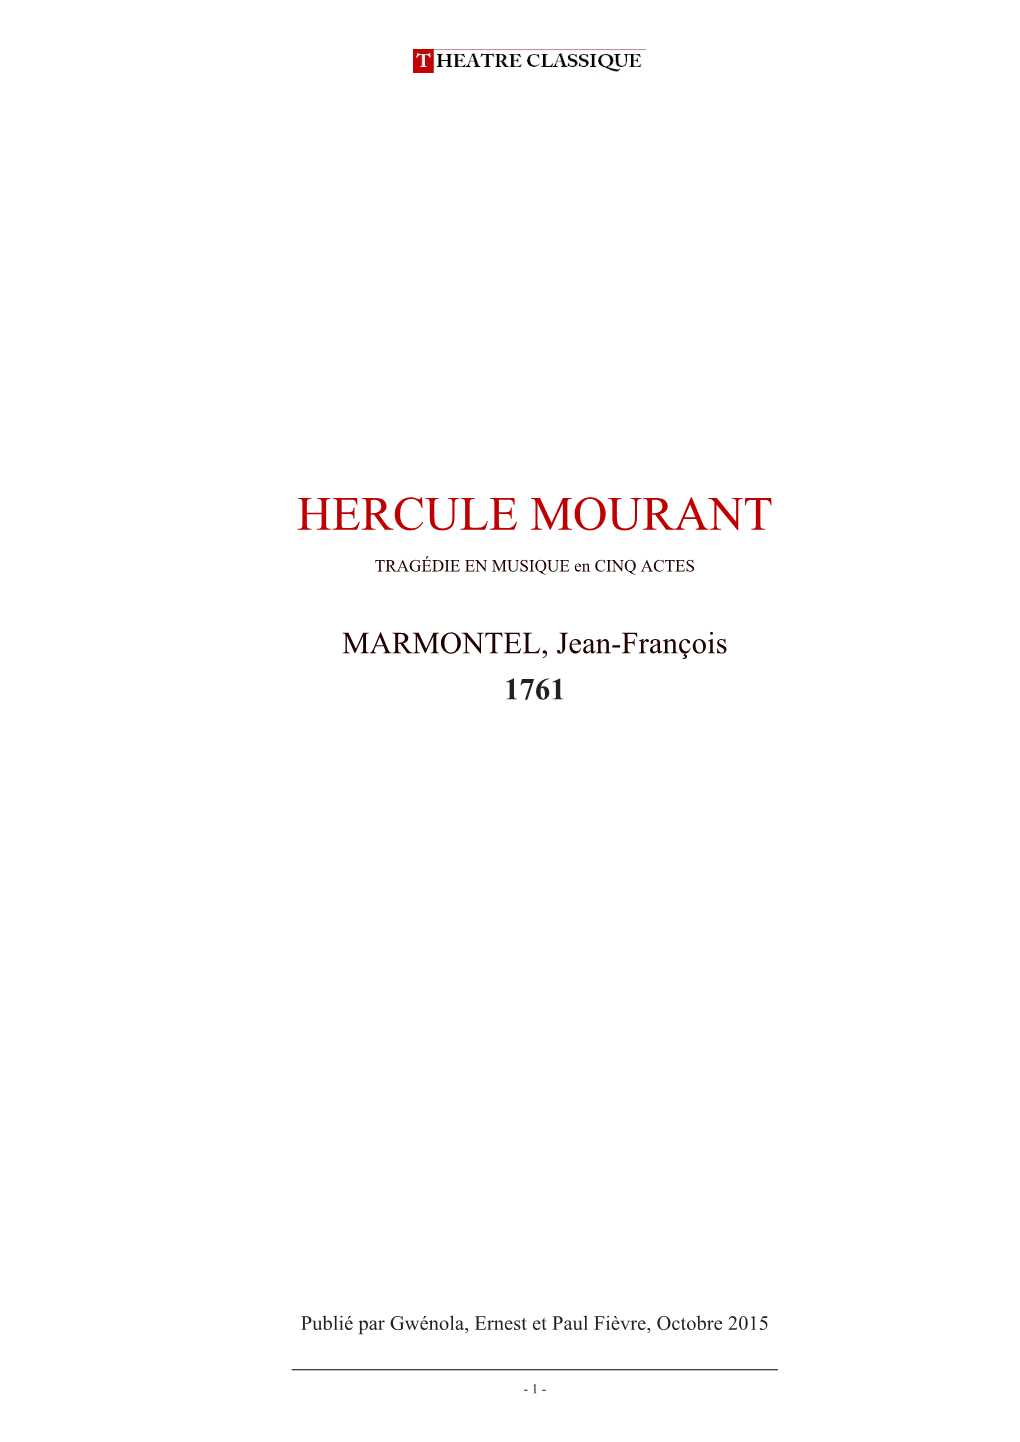 Hercule Mourant, Comédie Galante